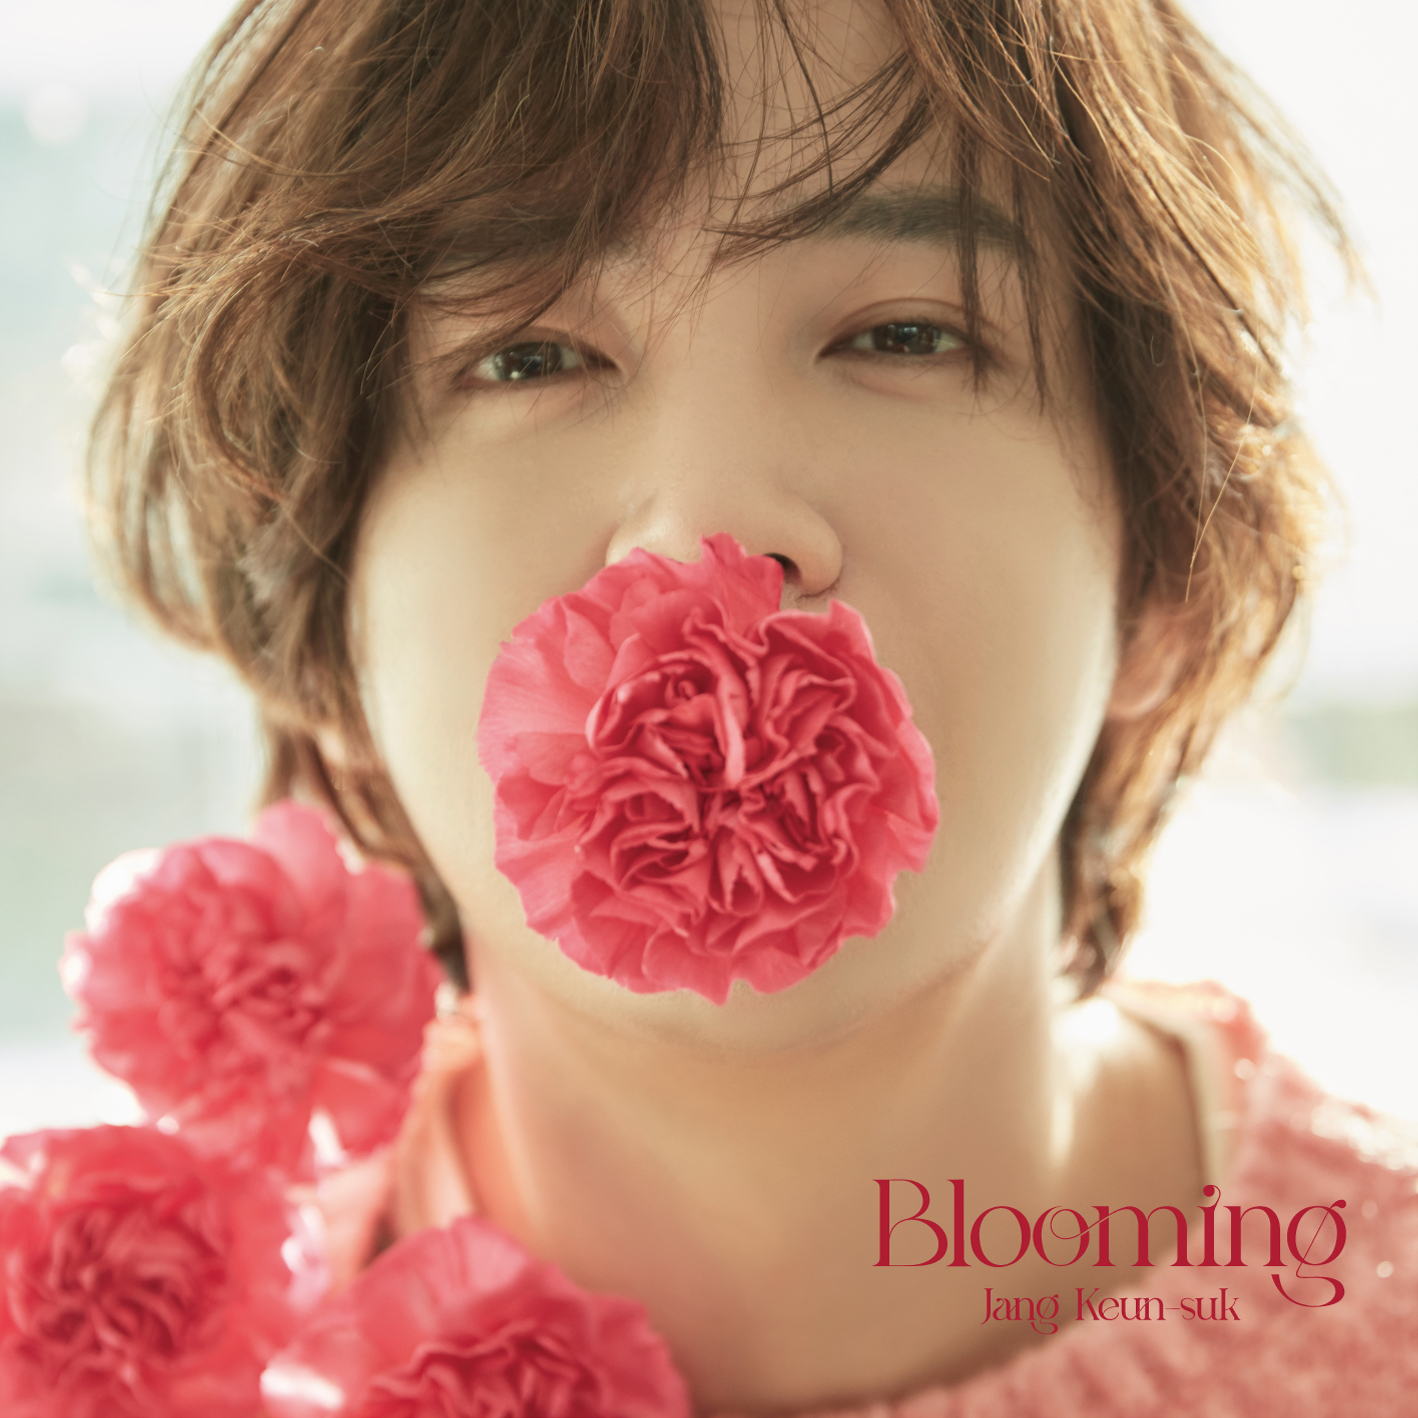 チャン・グンソク - Blooming [FANCLUB限定盤] | 韓国エンタメ・トレンドグッズ、チケットならKOARI(コアリ)ショップ